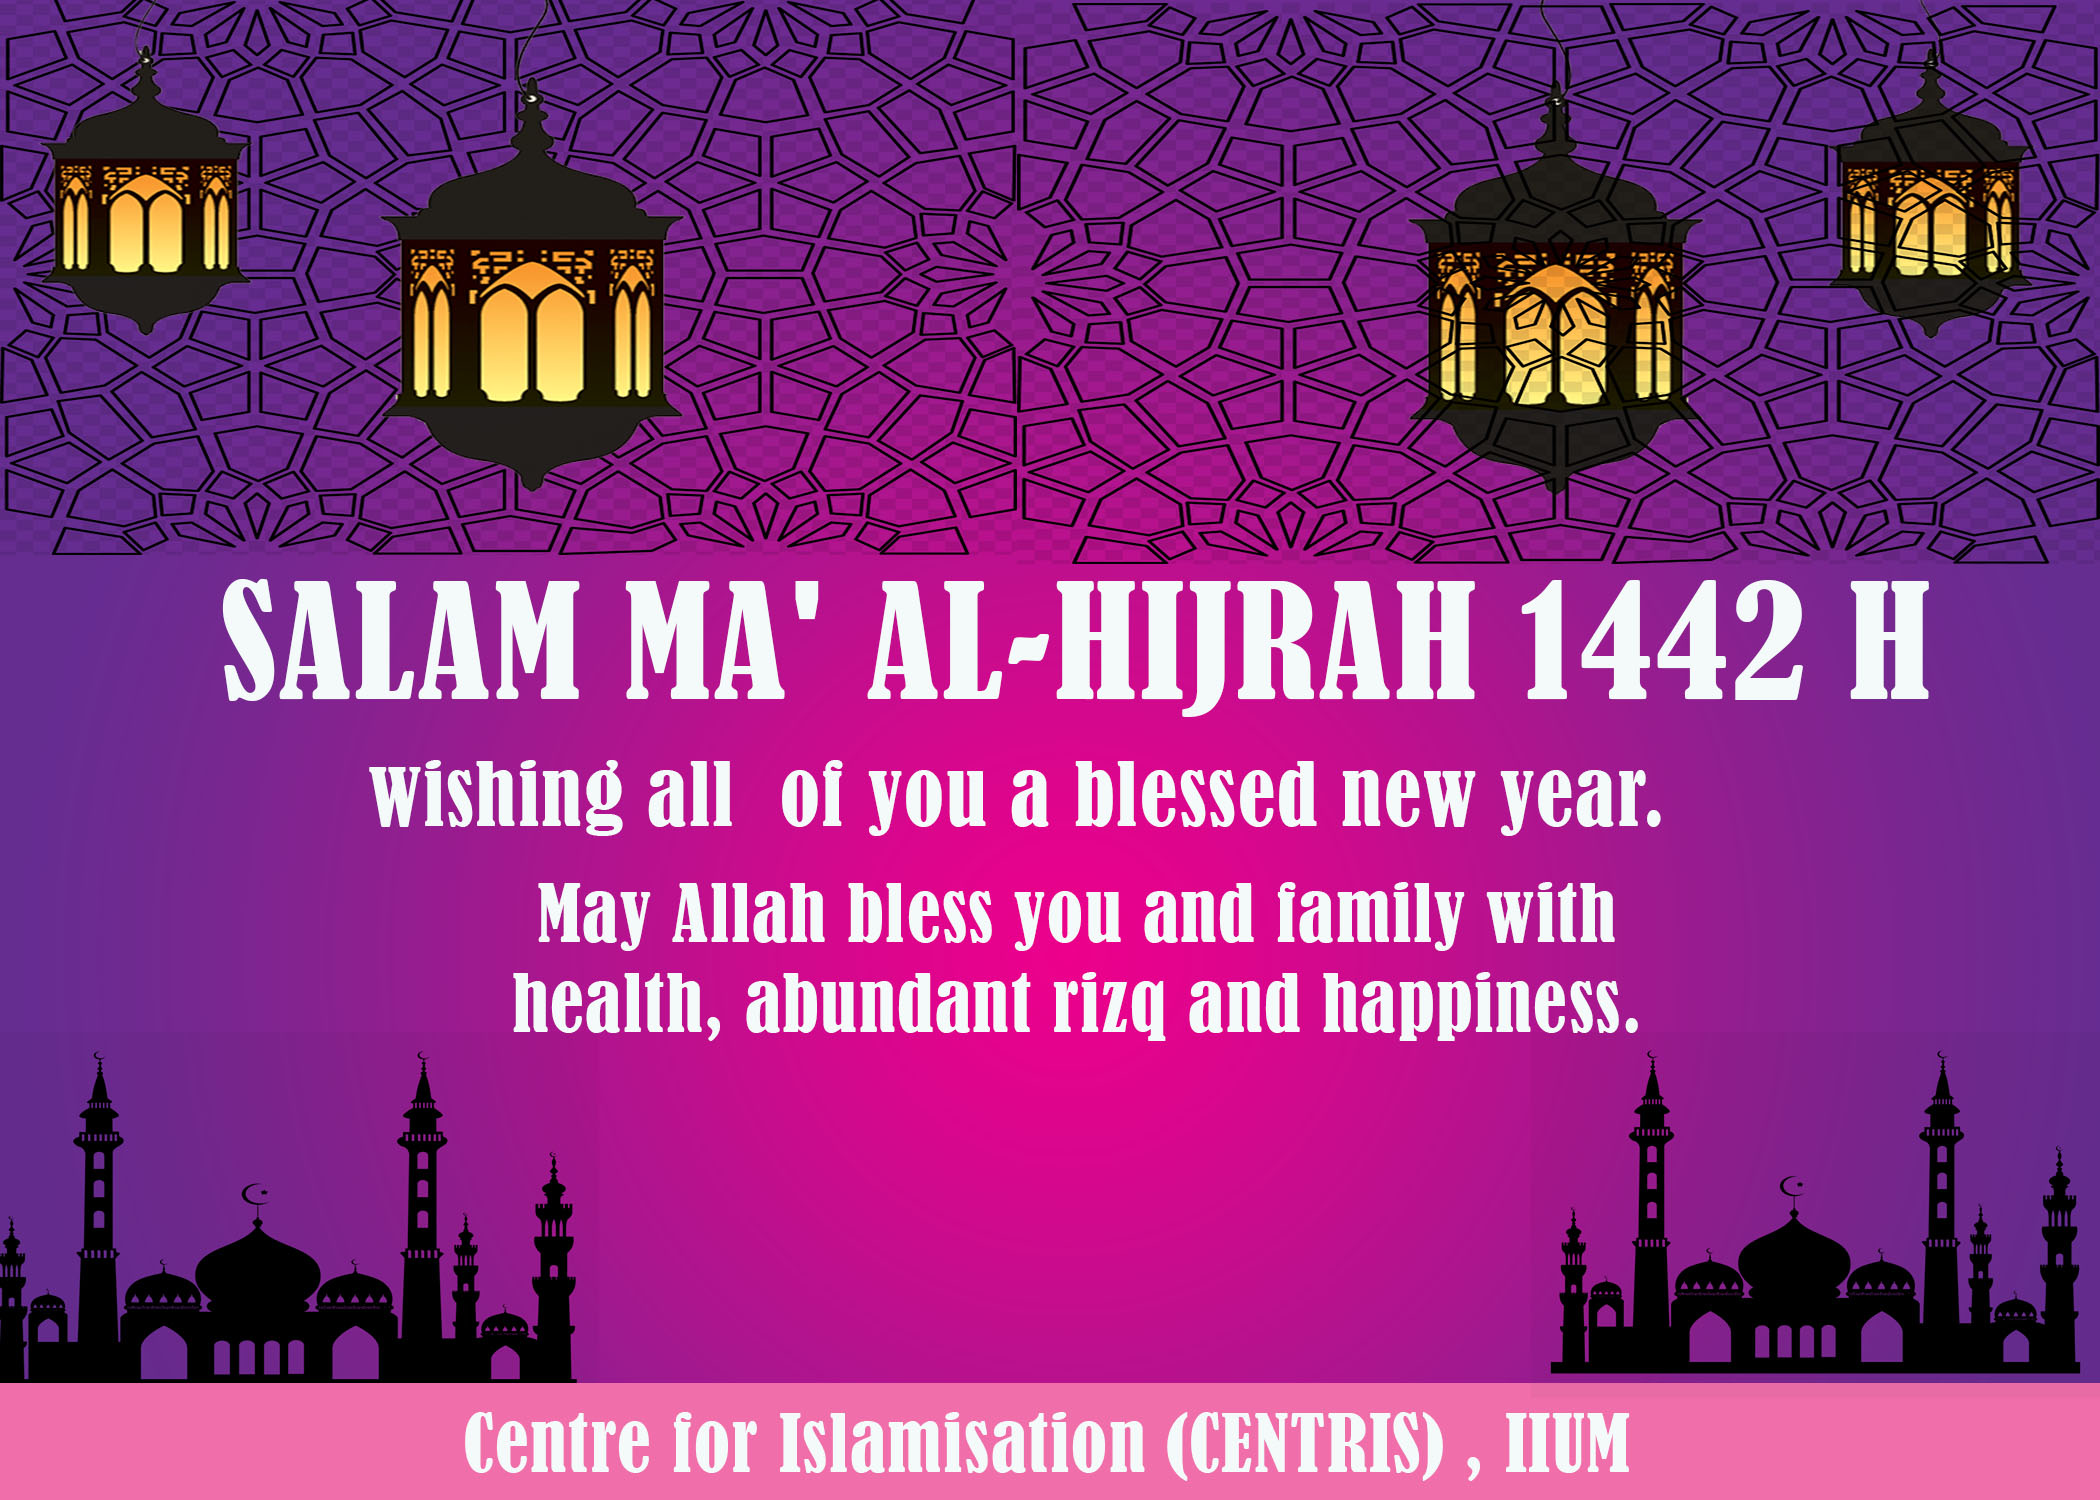 Salam Maal Hijrah 1442H from CENTRIS